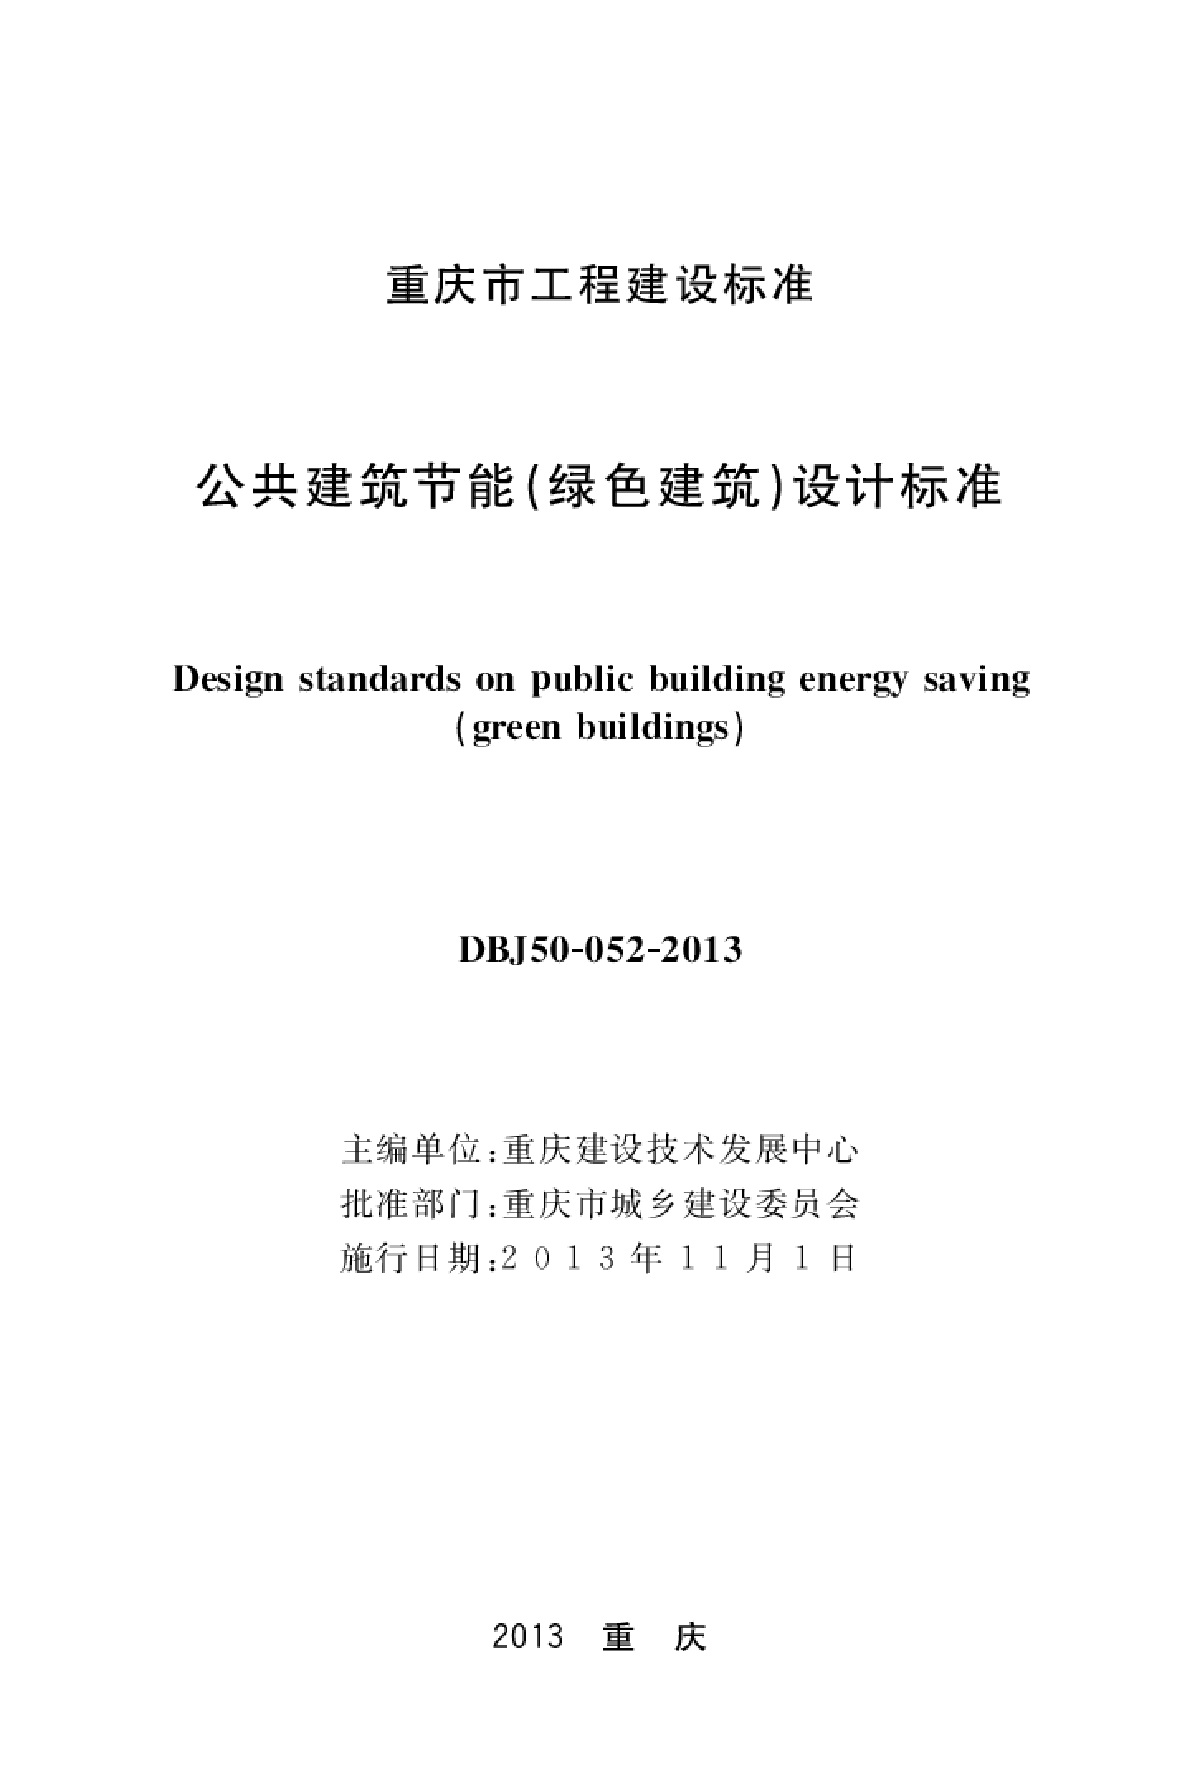 DBJ50-052-2013公共建筑节能设计标准